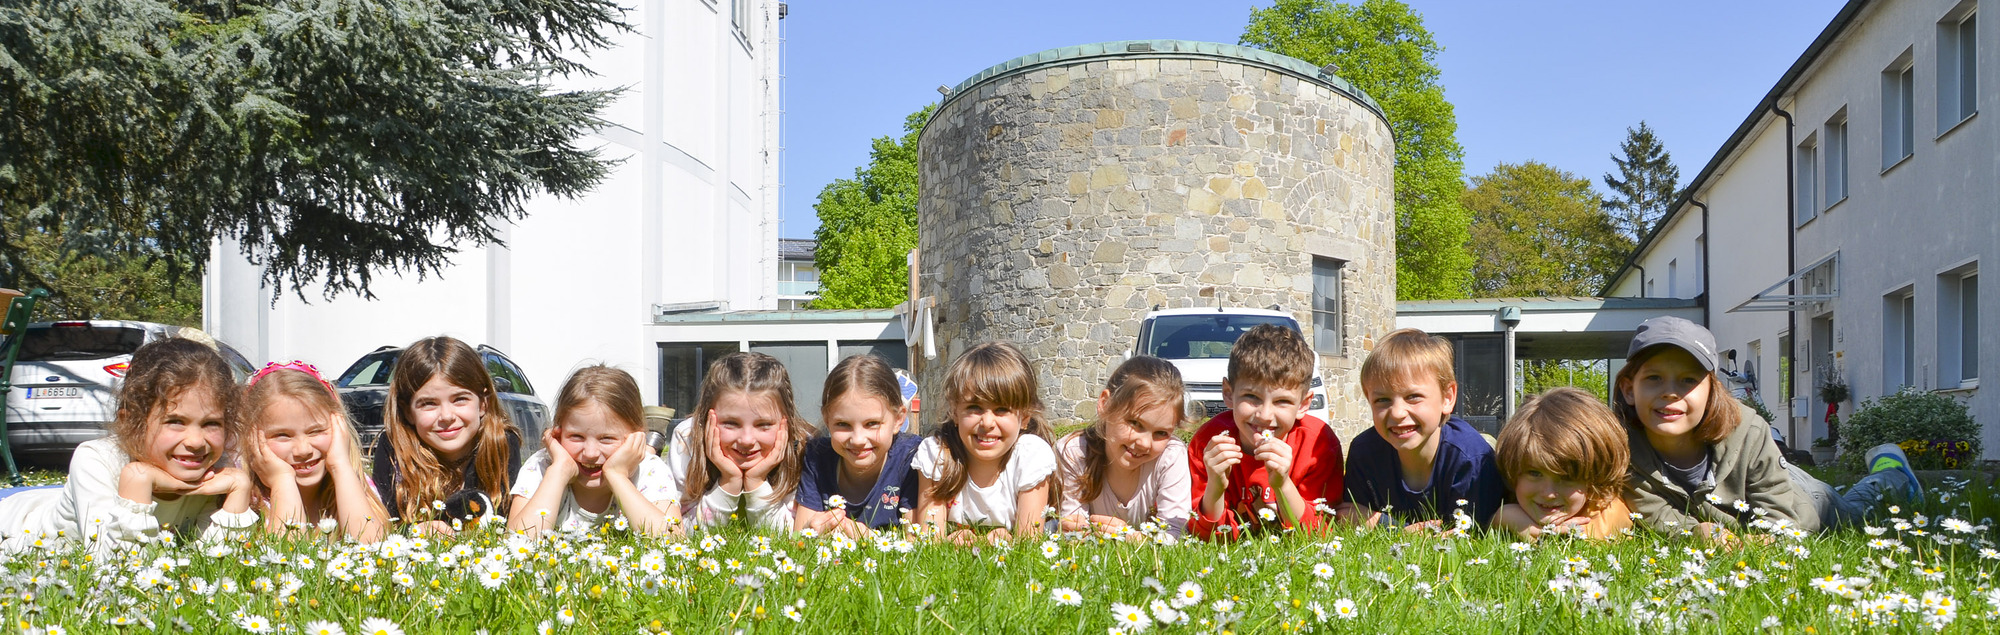 Kinder in der Blumenwiese